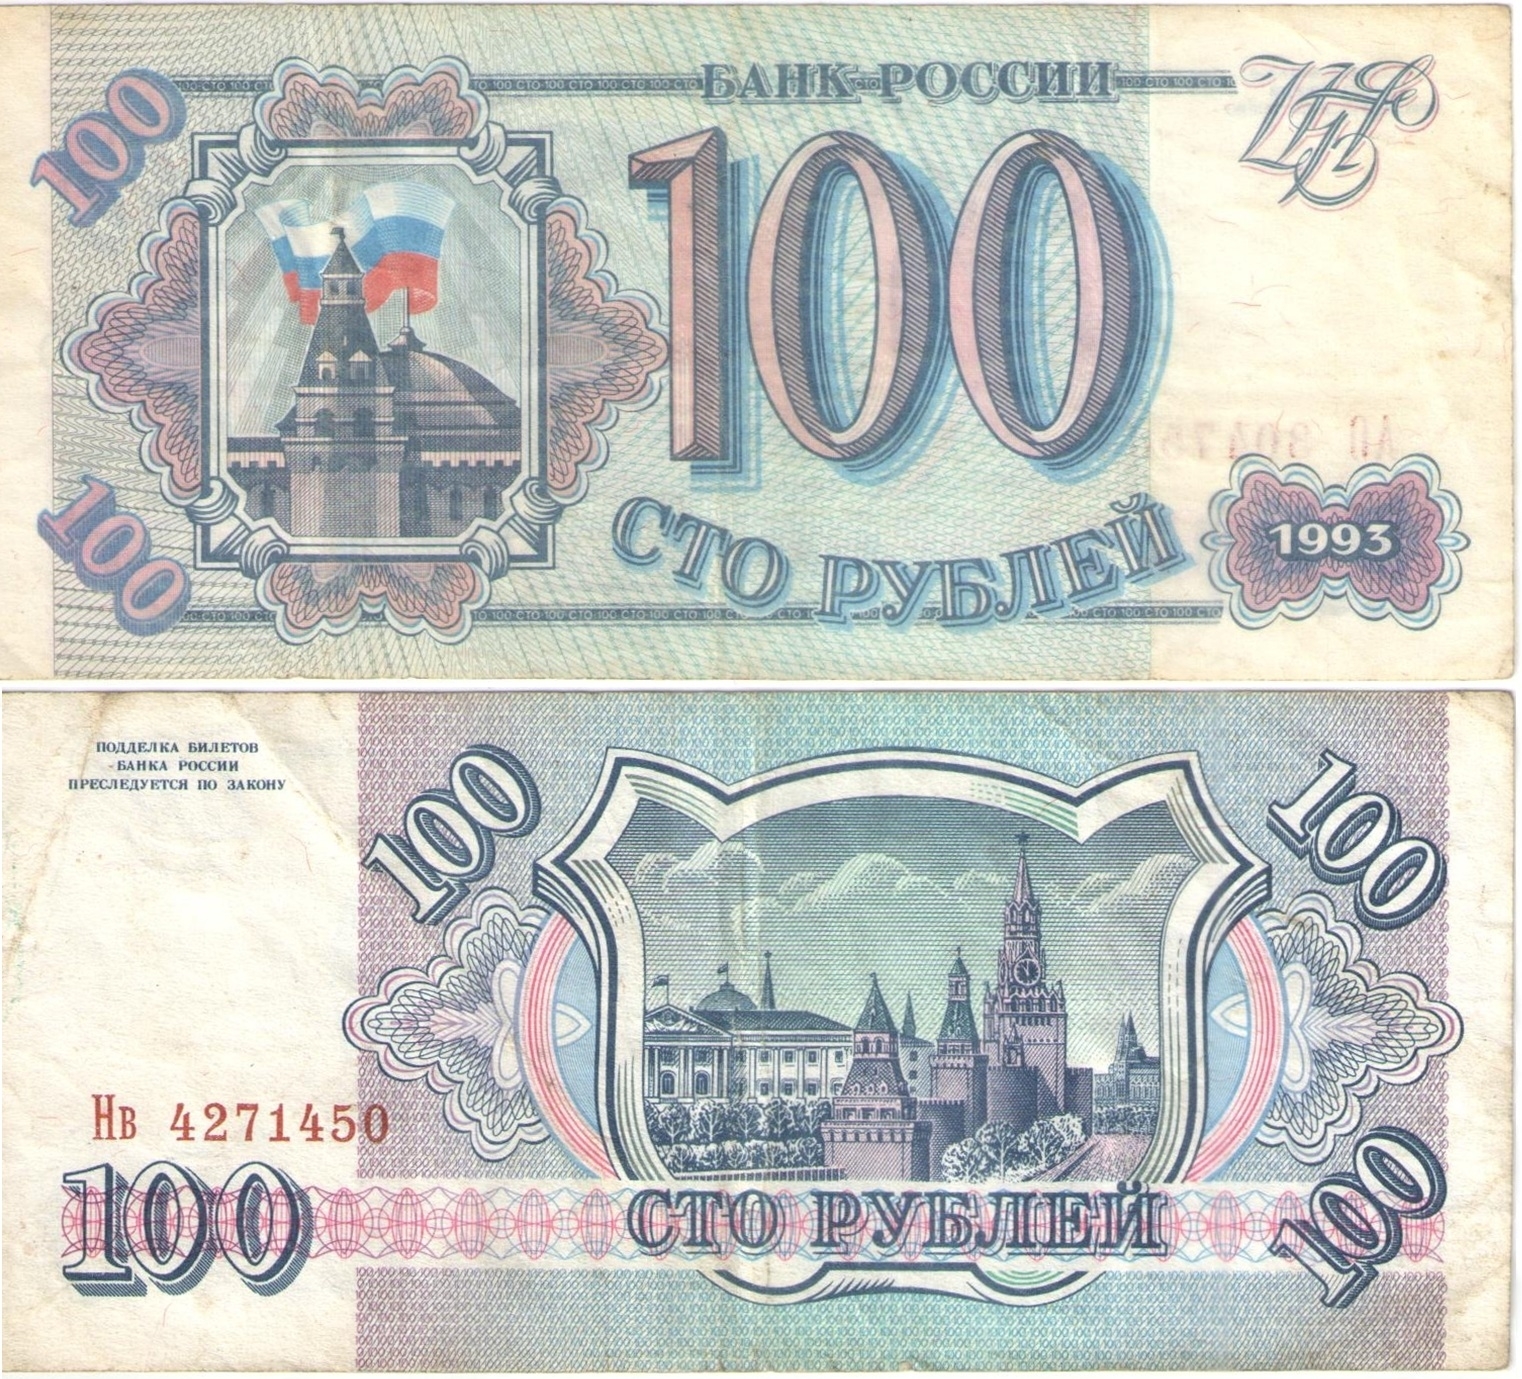 100 рублевая купюра фото крупным планом